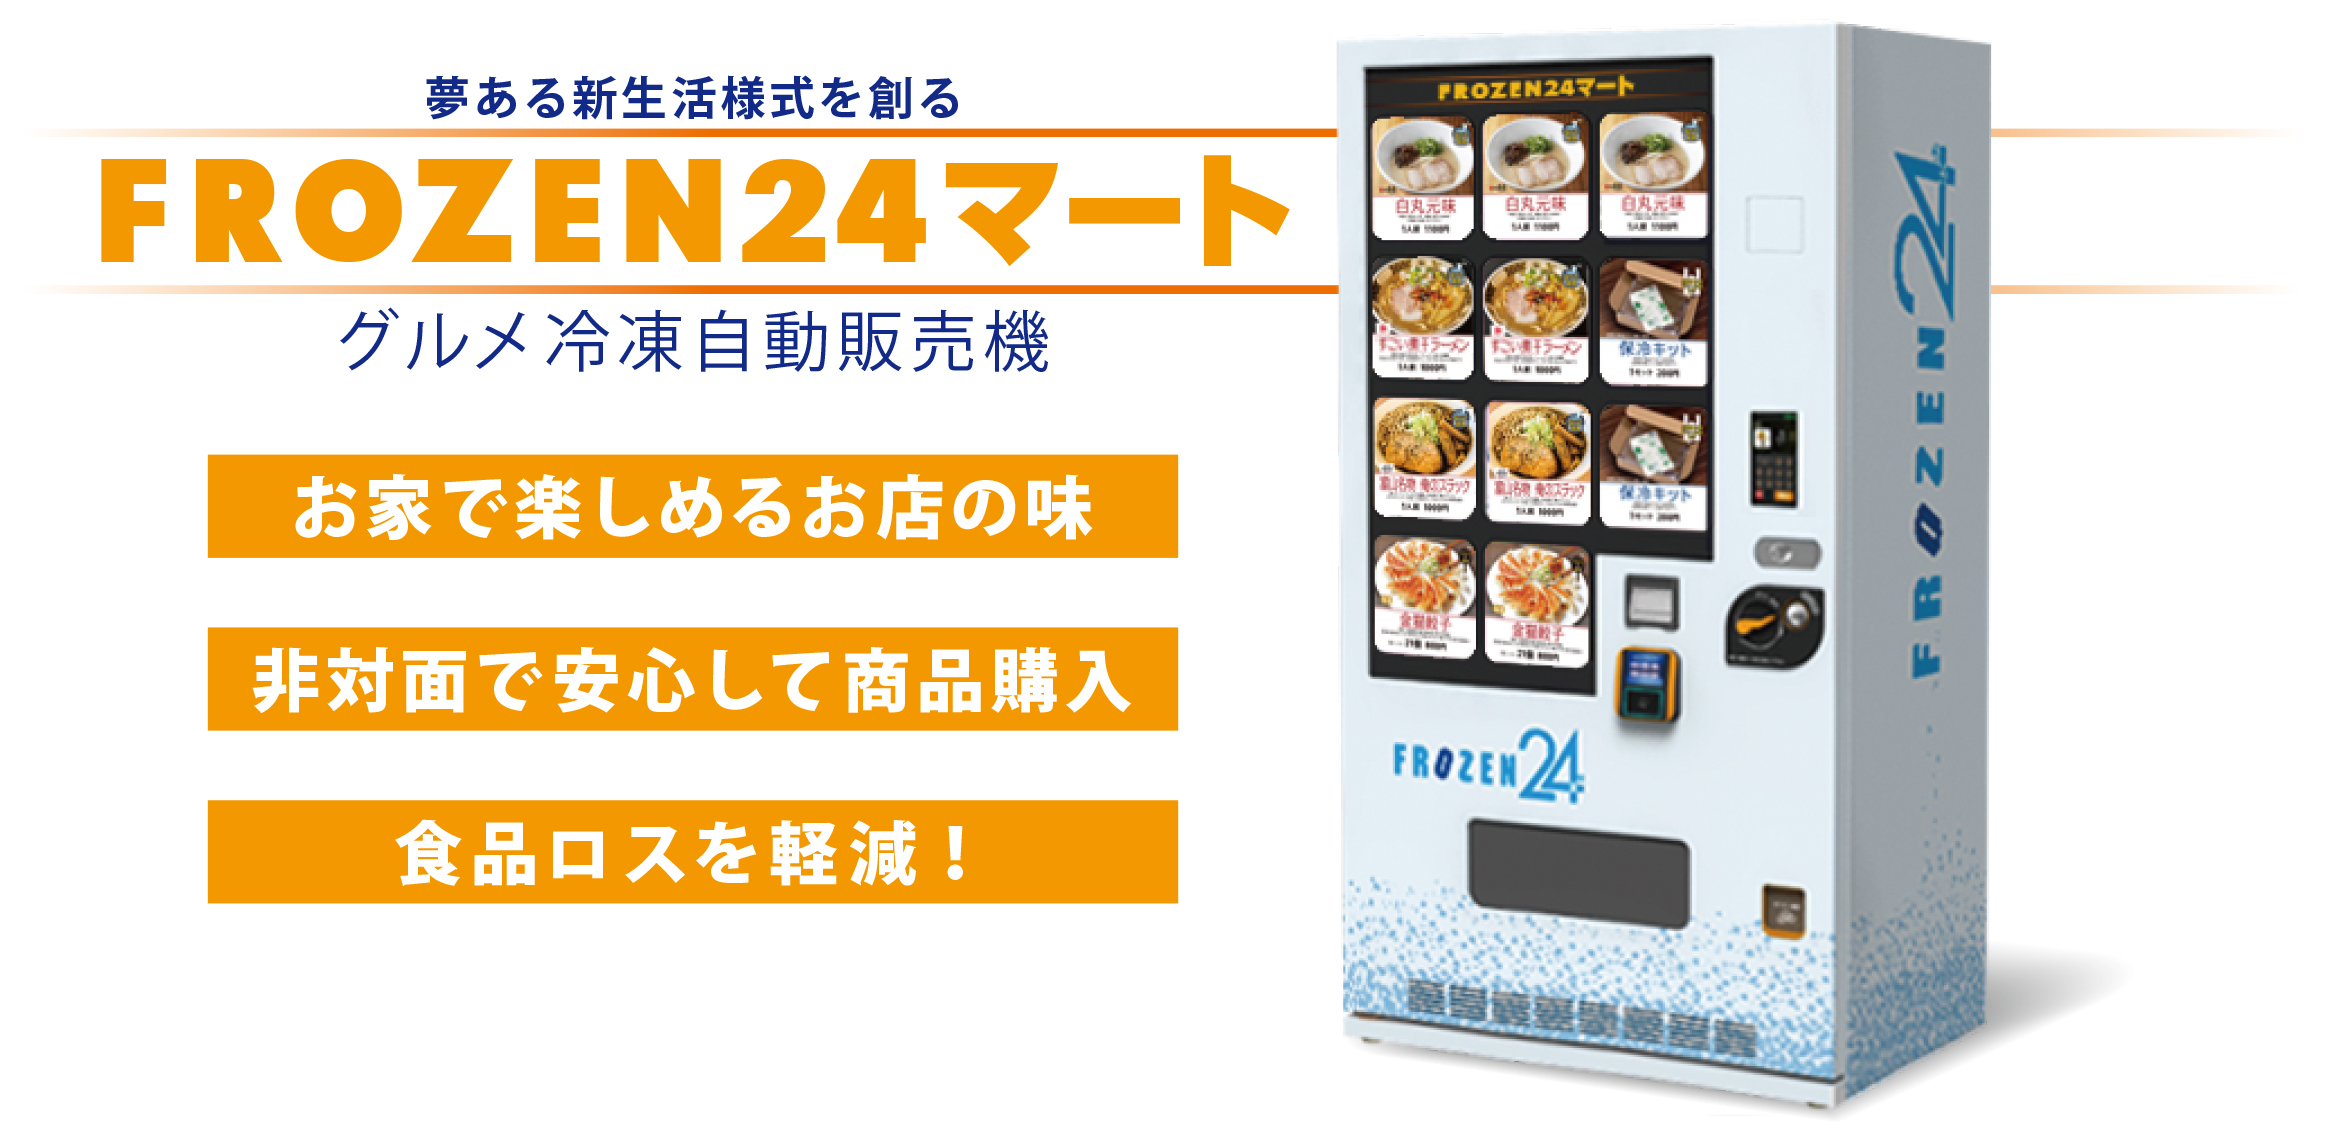 Frozen24マート 東京メトロ初設置 グルメ冷凍自販機の全国インフラ化を本格化へ 株式会社soboのプレスリリース